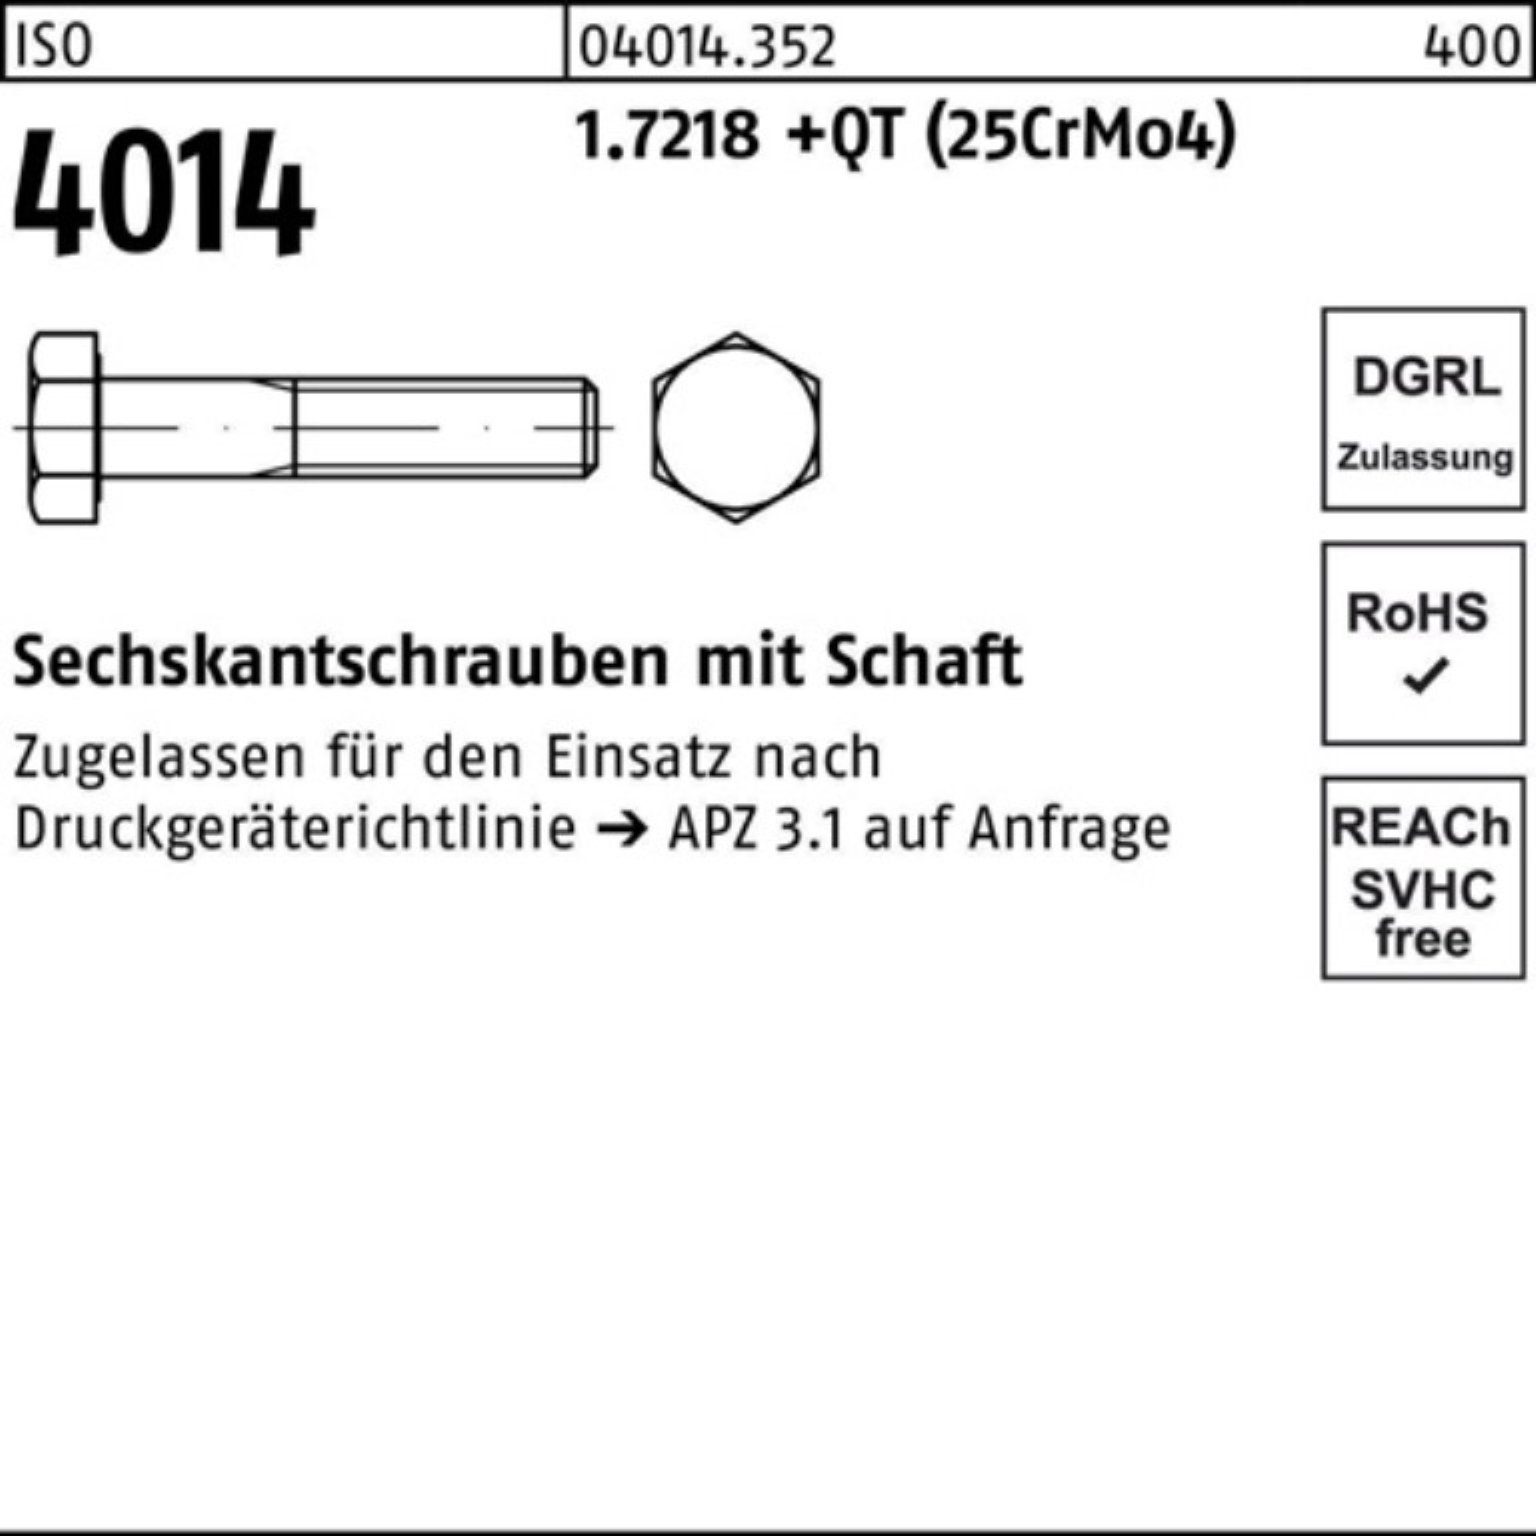 (25Cr 100er M30x Sechskantschraube Sechskantschraube Bufab ISO 170 1.7218 4014 +QT Pack Schaft